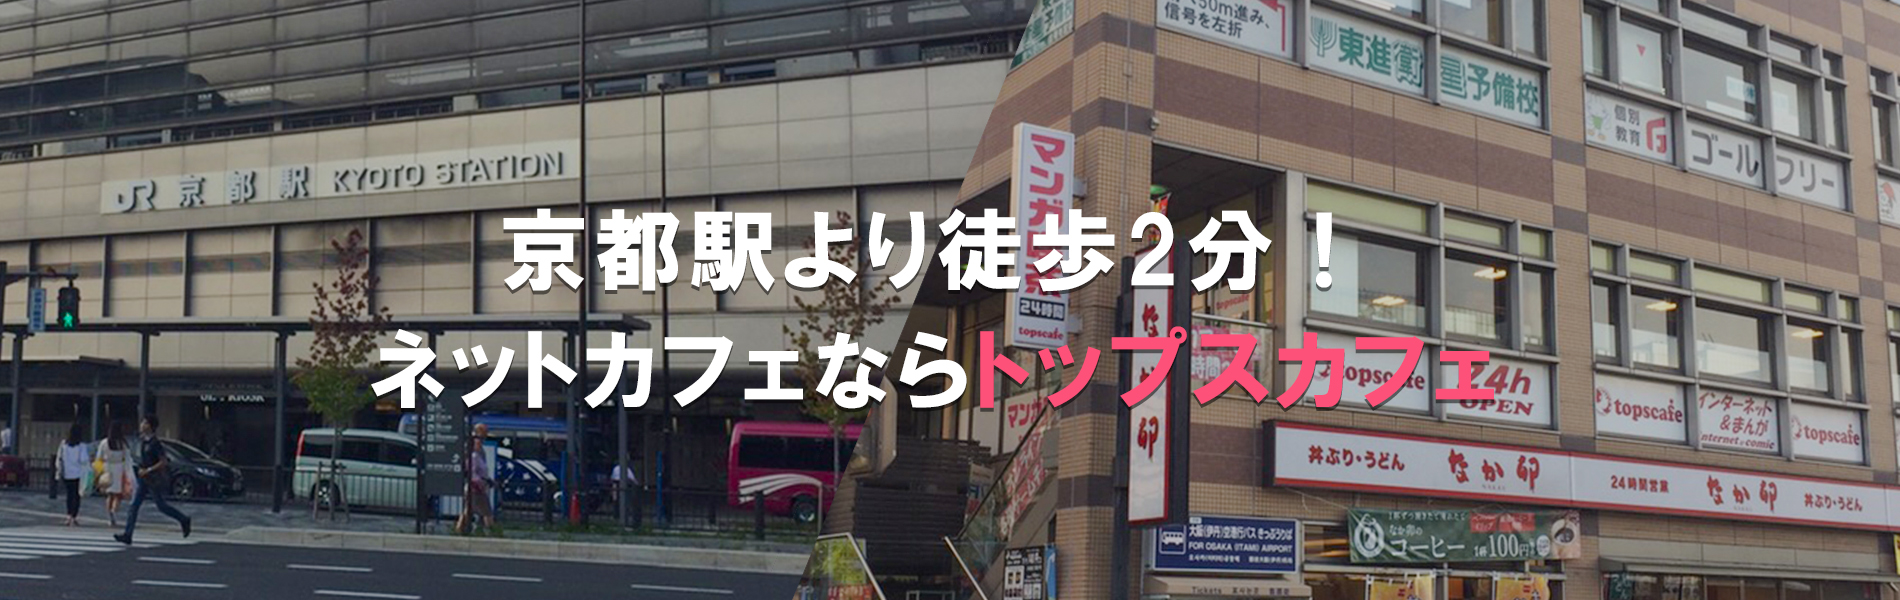 トップスカフェ Topscae 京都駅八条口より徒歩2分のインターネットカフェ 漫画喫茶